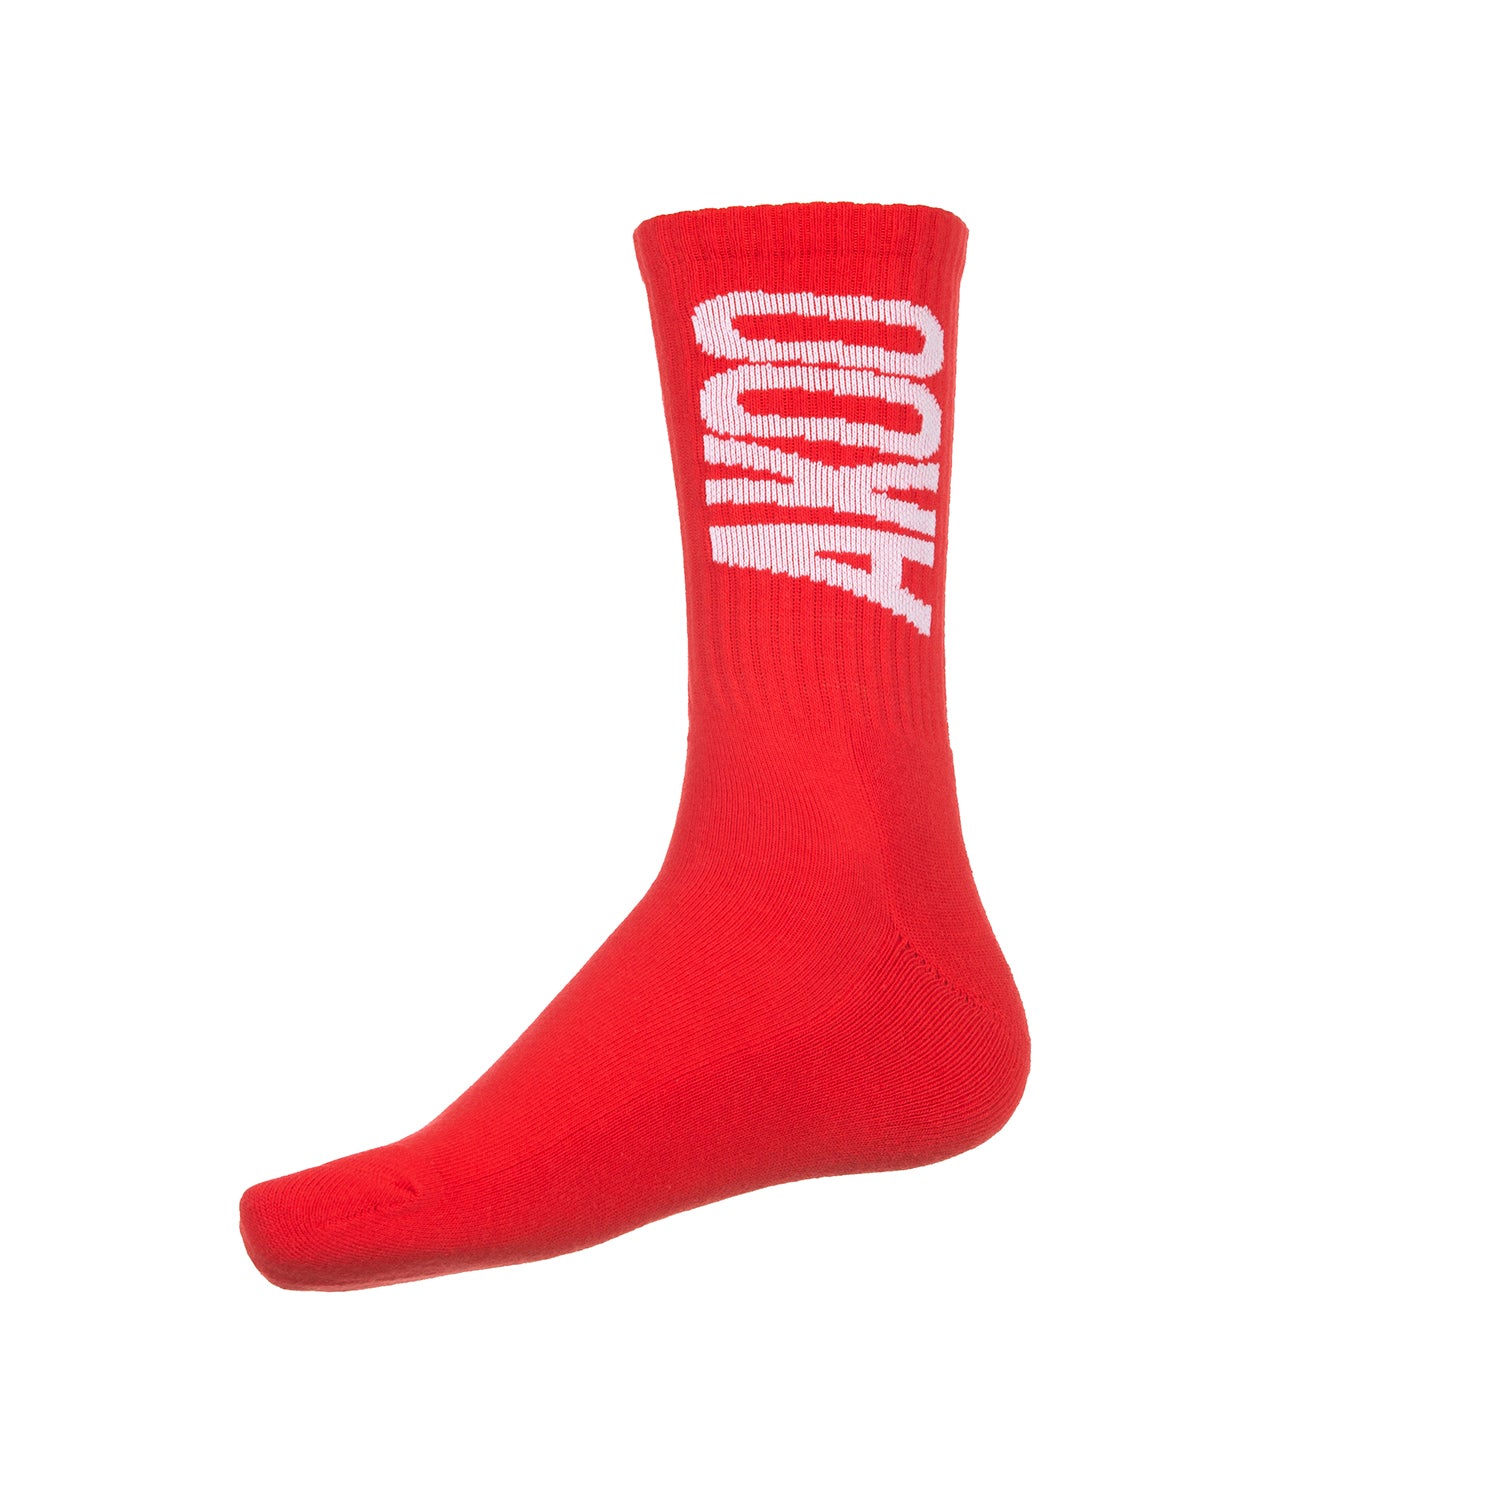 Akoo Mens Comfy Socks (Racing Red) - Akoo Clothing